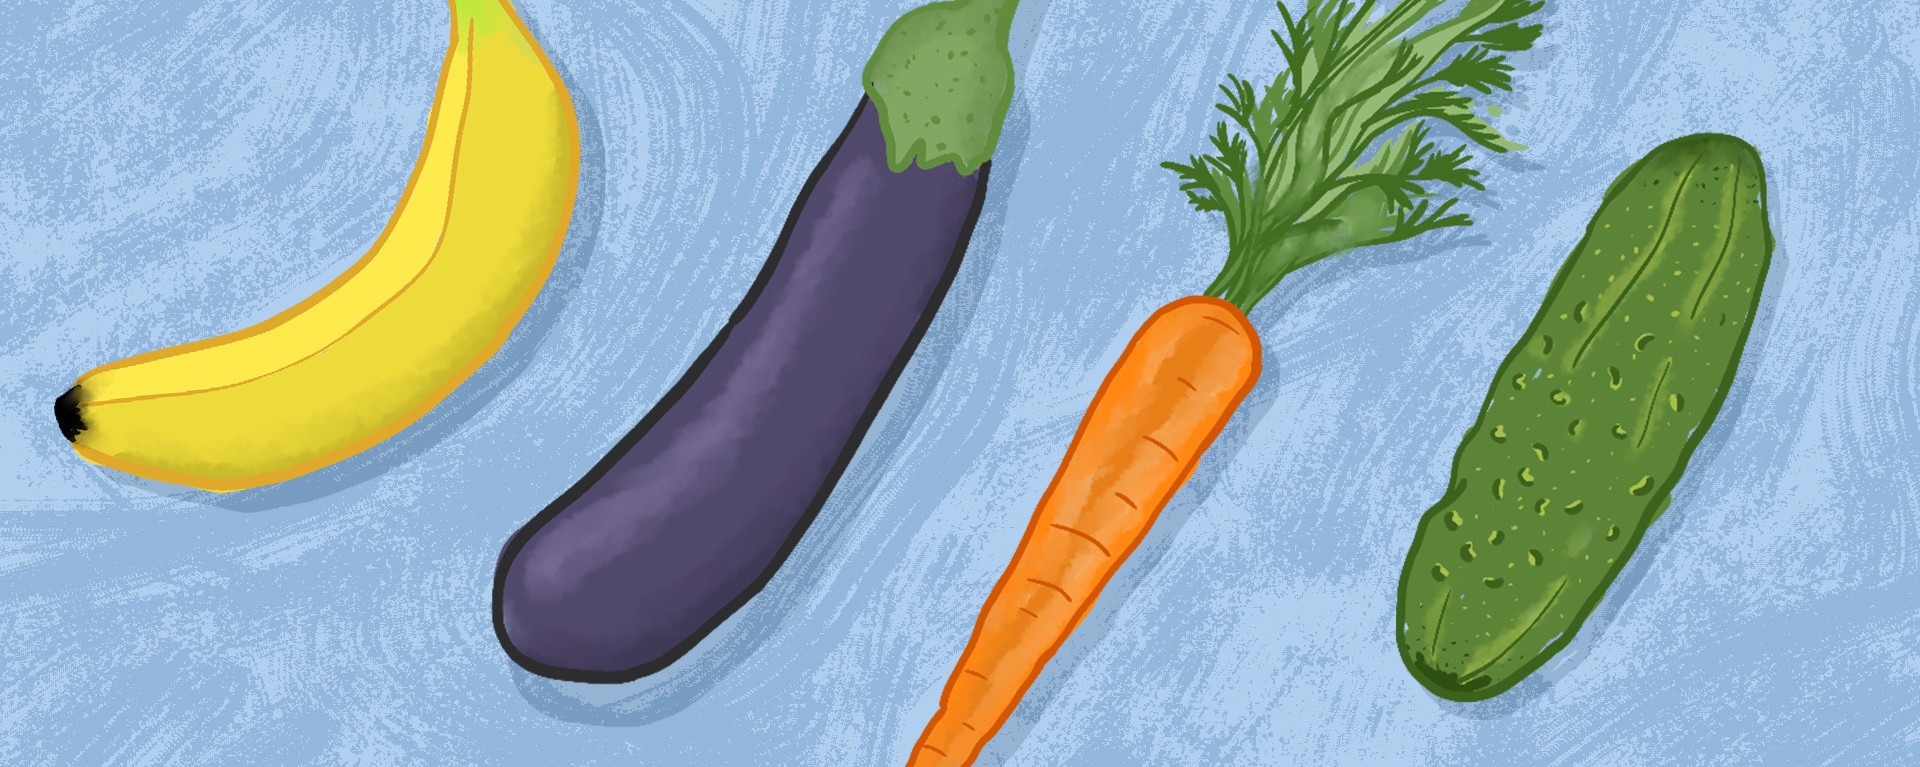 Spaniolii cultivă legume obscene. Au produs un ardei sub formă de penis – VIDEO